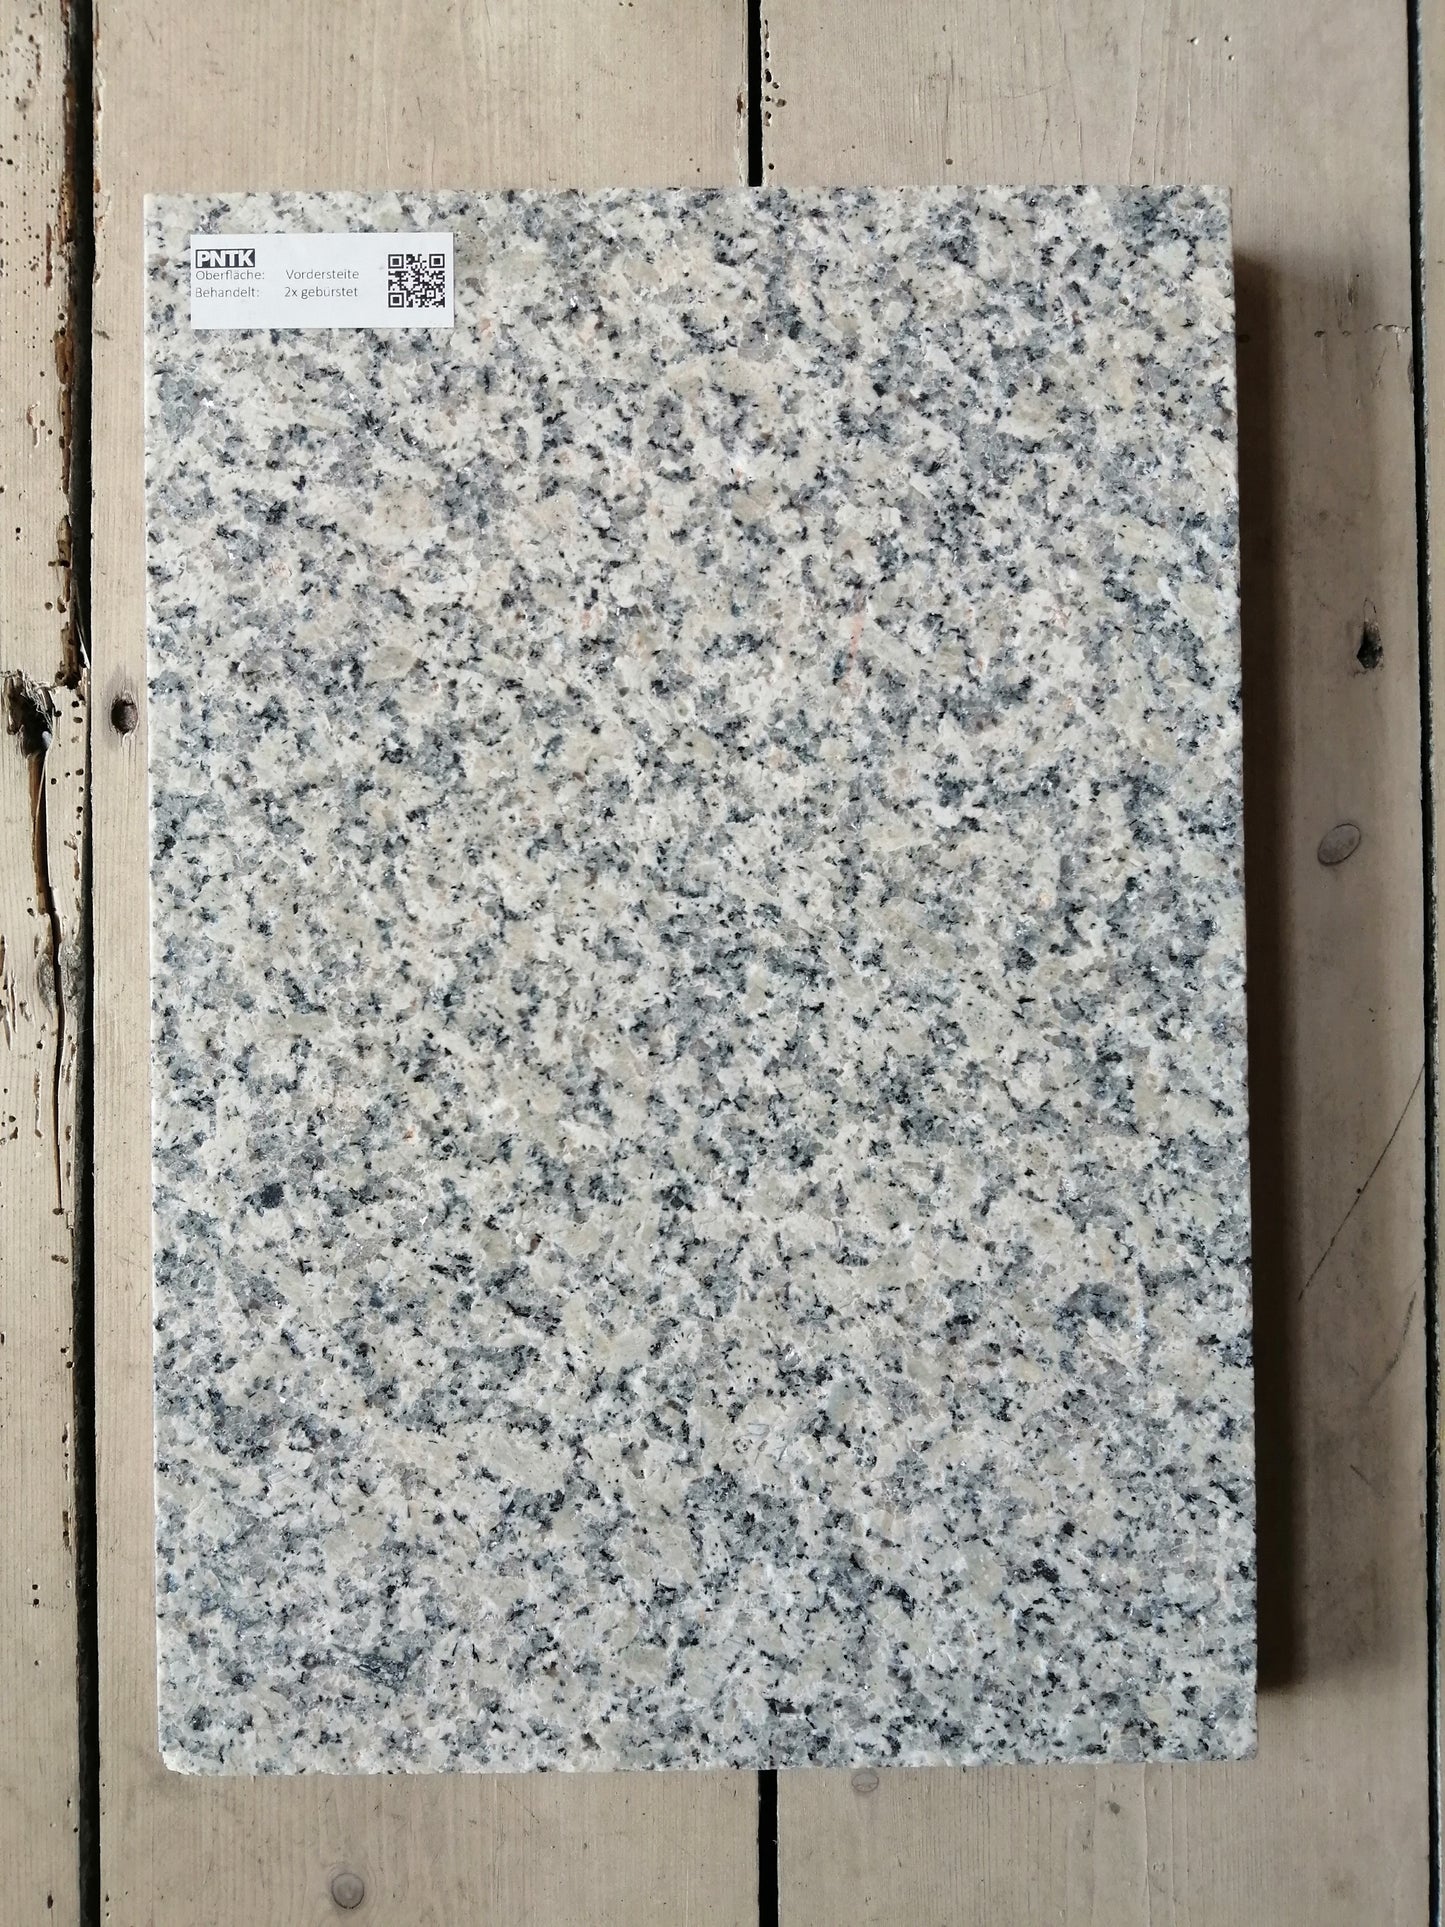 Granitstein Bianco Sardo Fassadenplatten 129 cm Länge